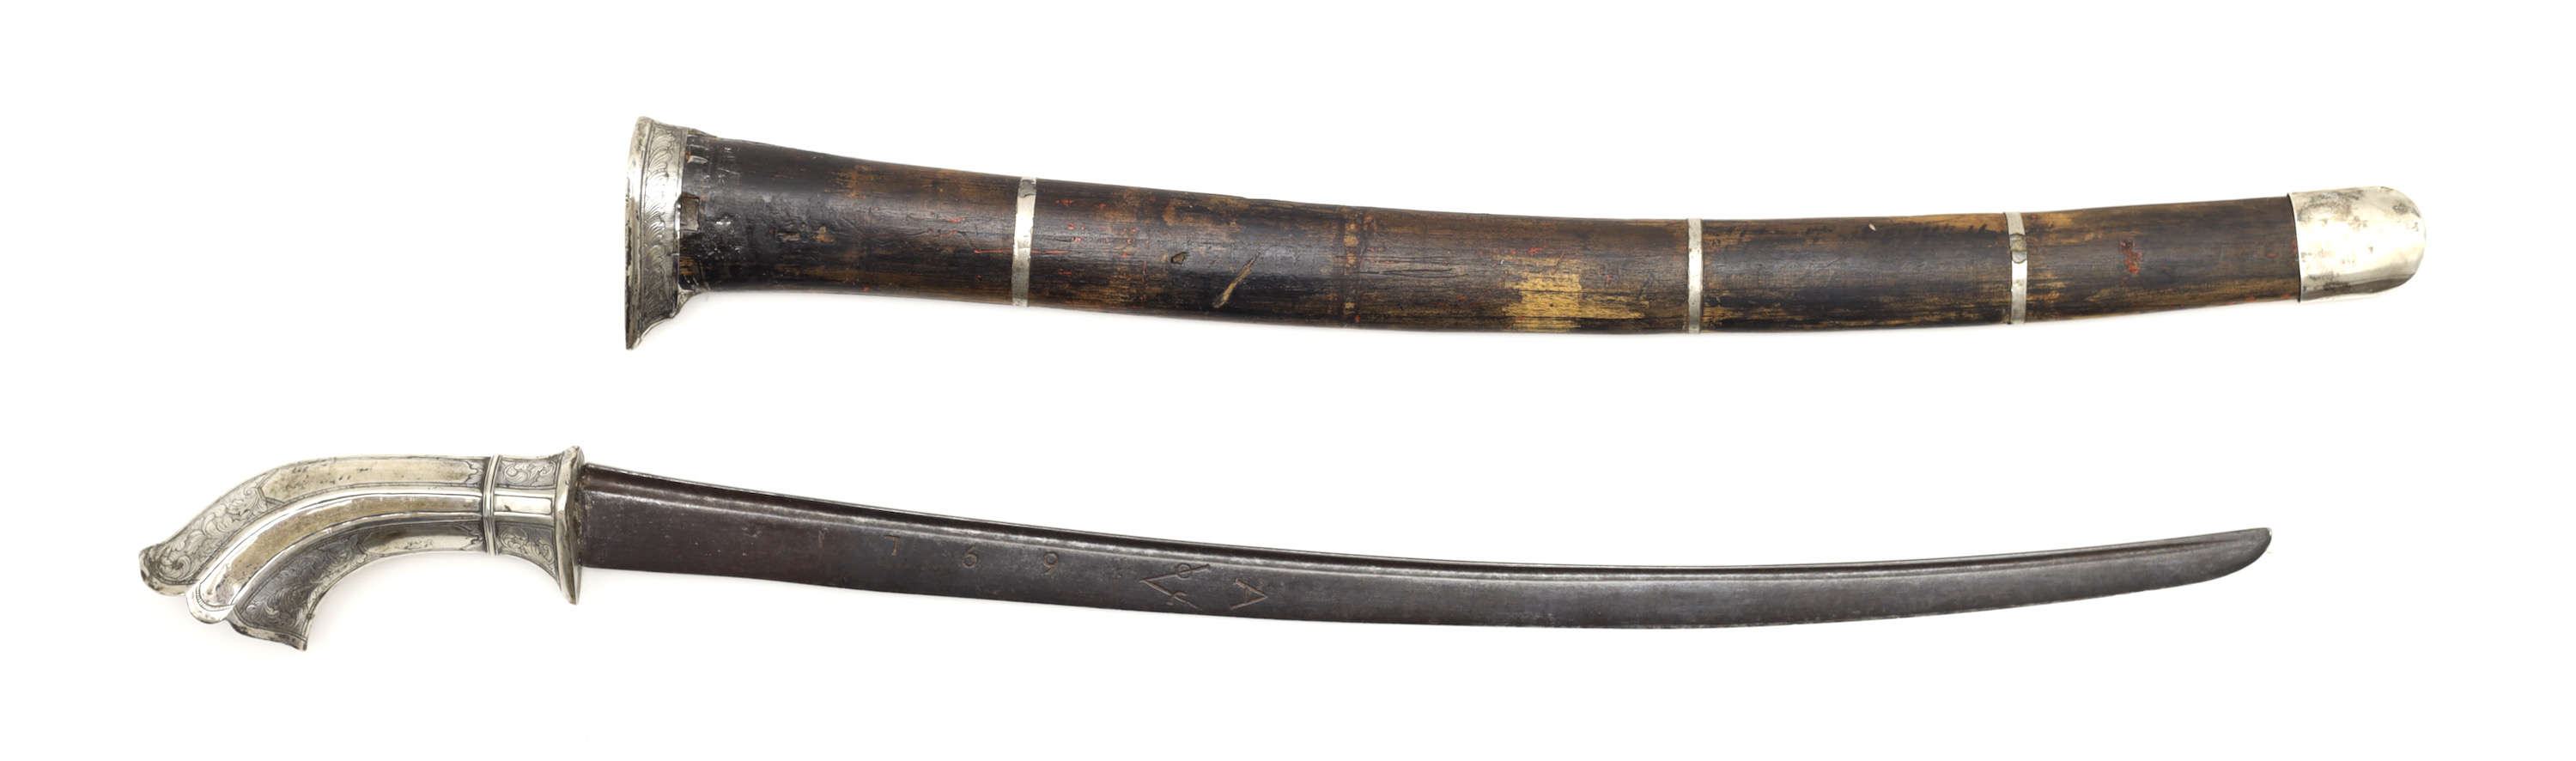 Preanger gobang sword with dated VOC blade